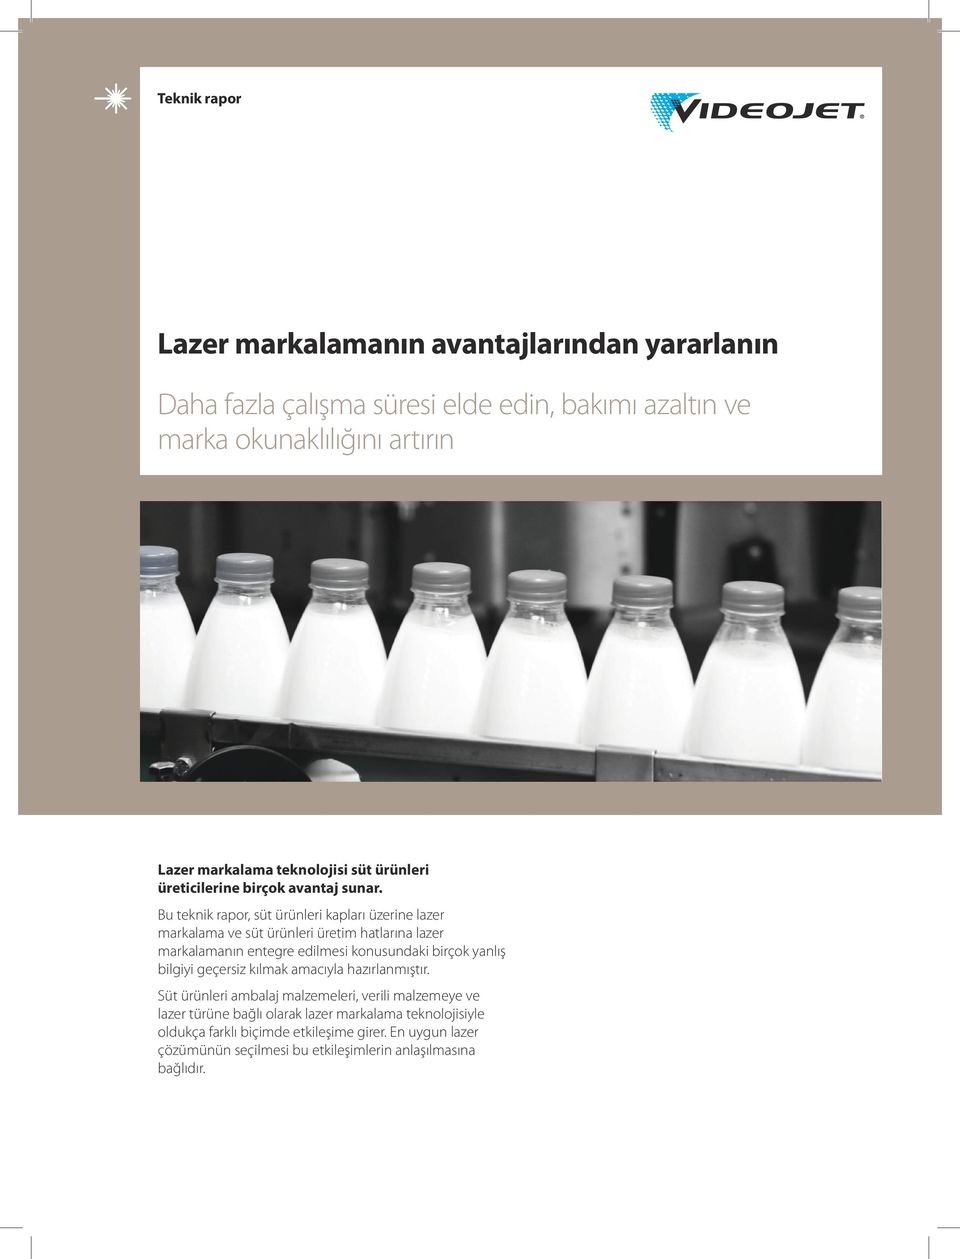 Bu teknik rapor, süt ürünleri kapları üzerine lazer markalama ve süt ürünleri üretim hatlarına lazer markalamanın entegre edilmesi konusundaki birçok yanlış